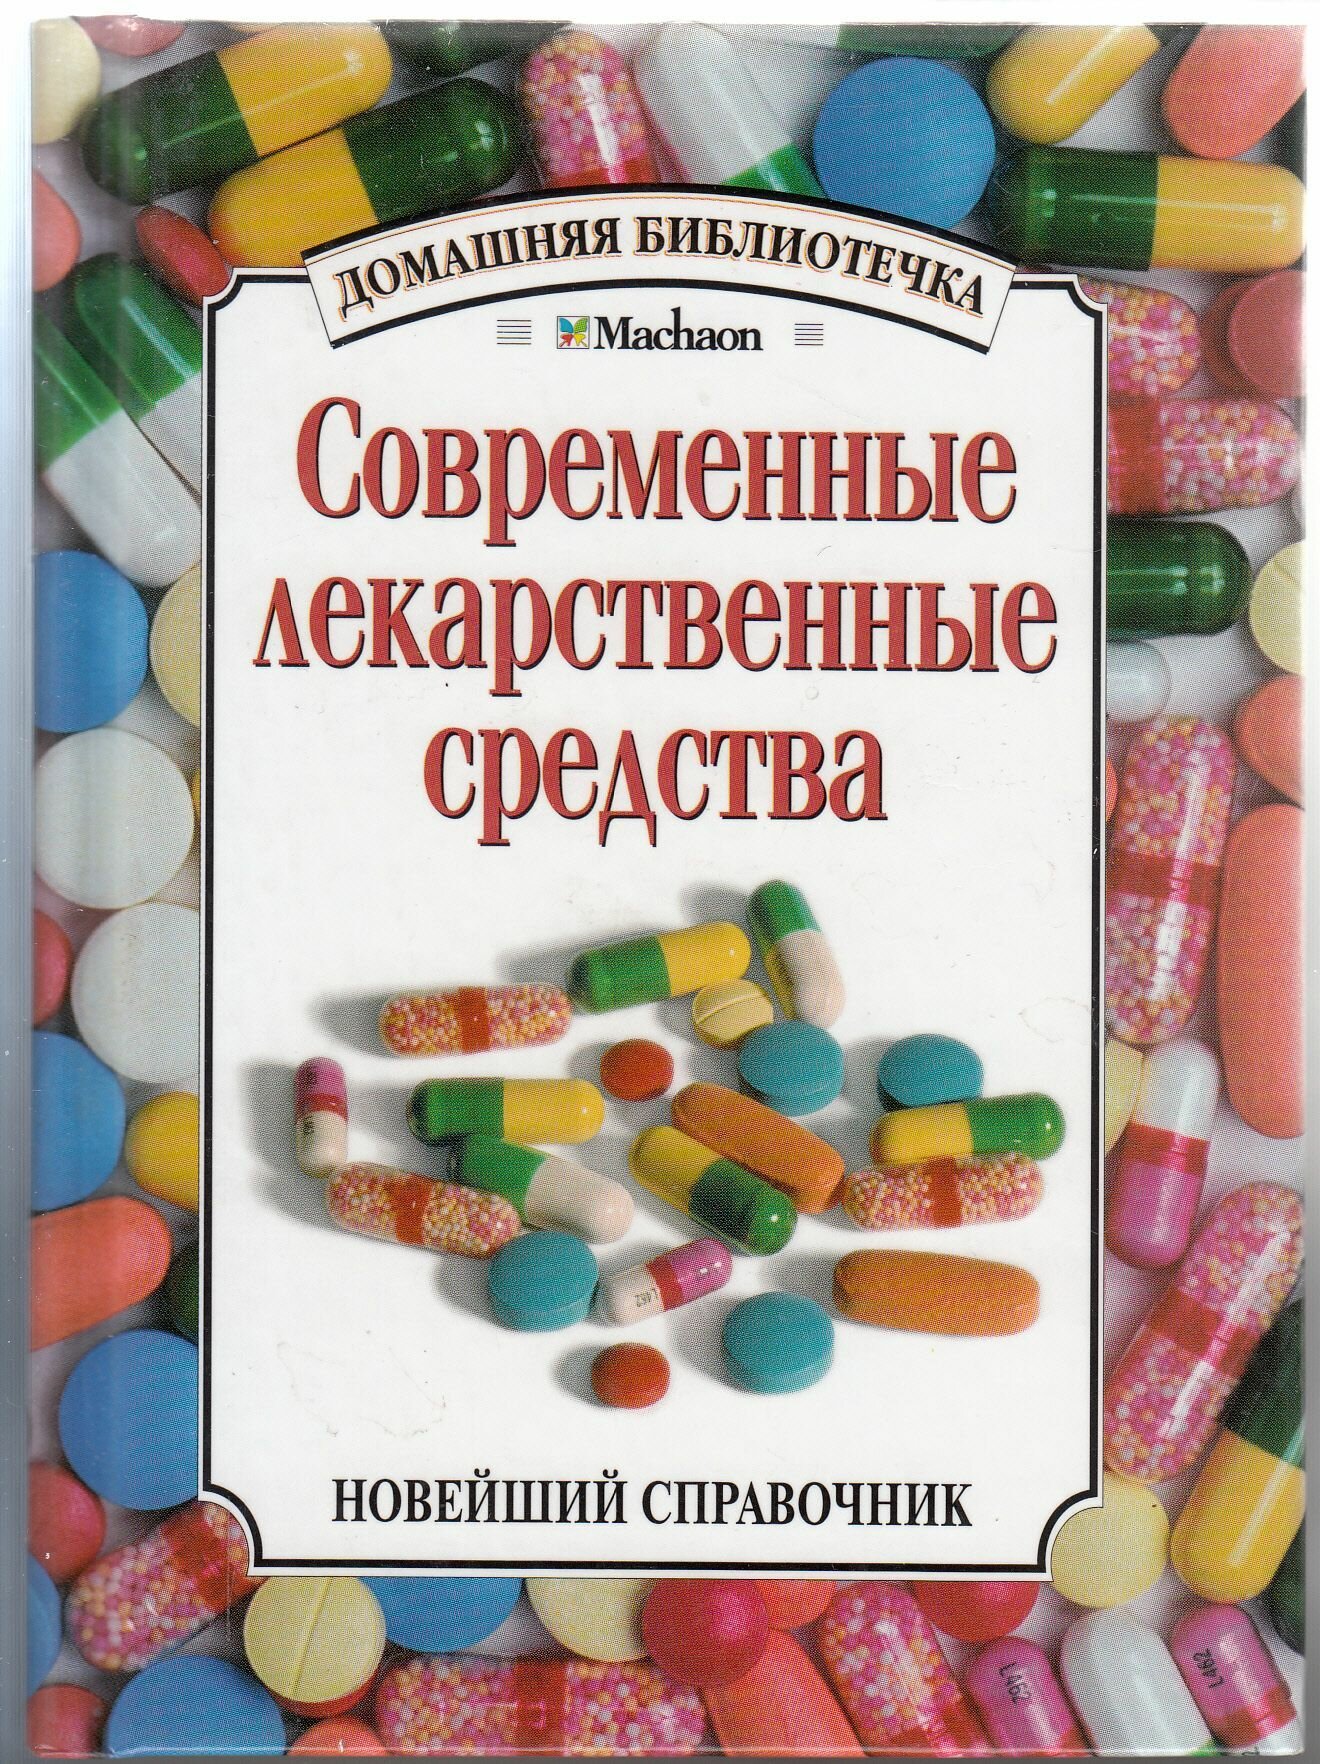 С. М. Зайцев. Современные лекарственные средства